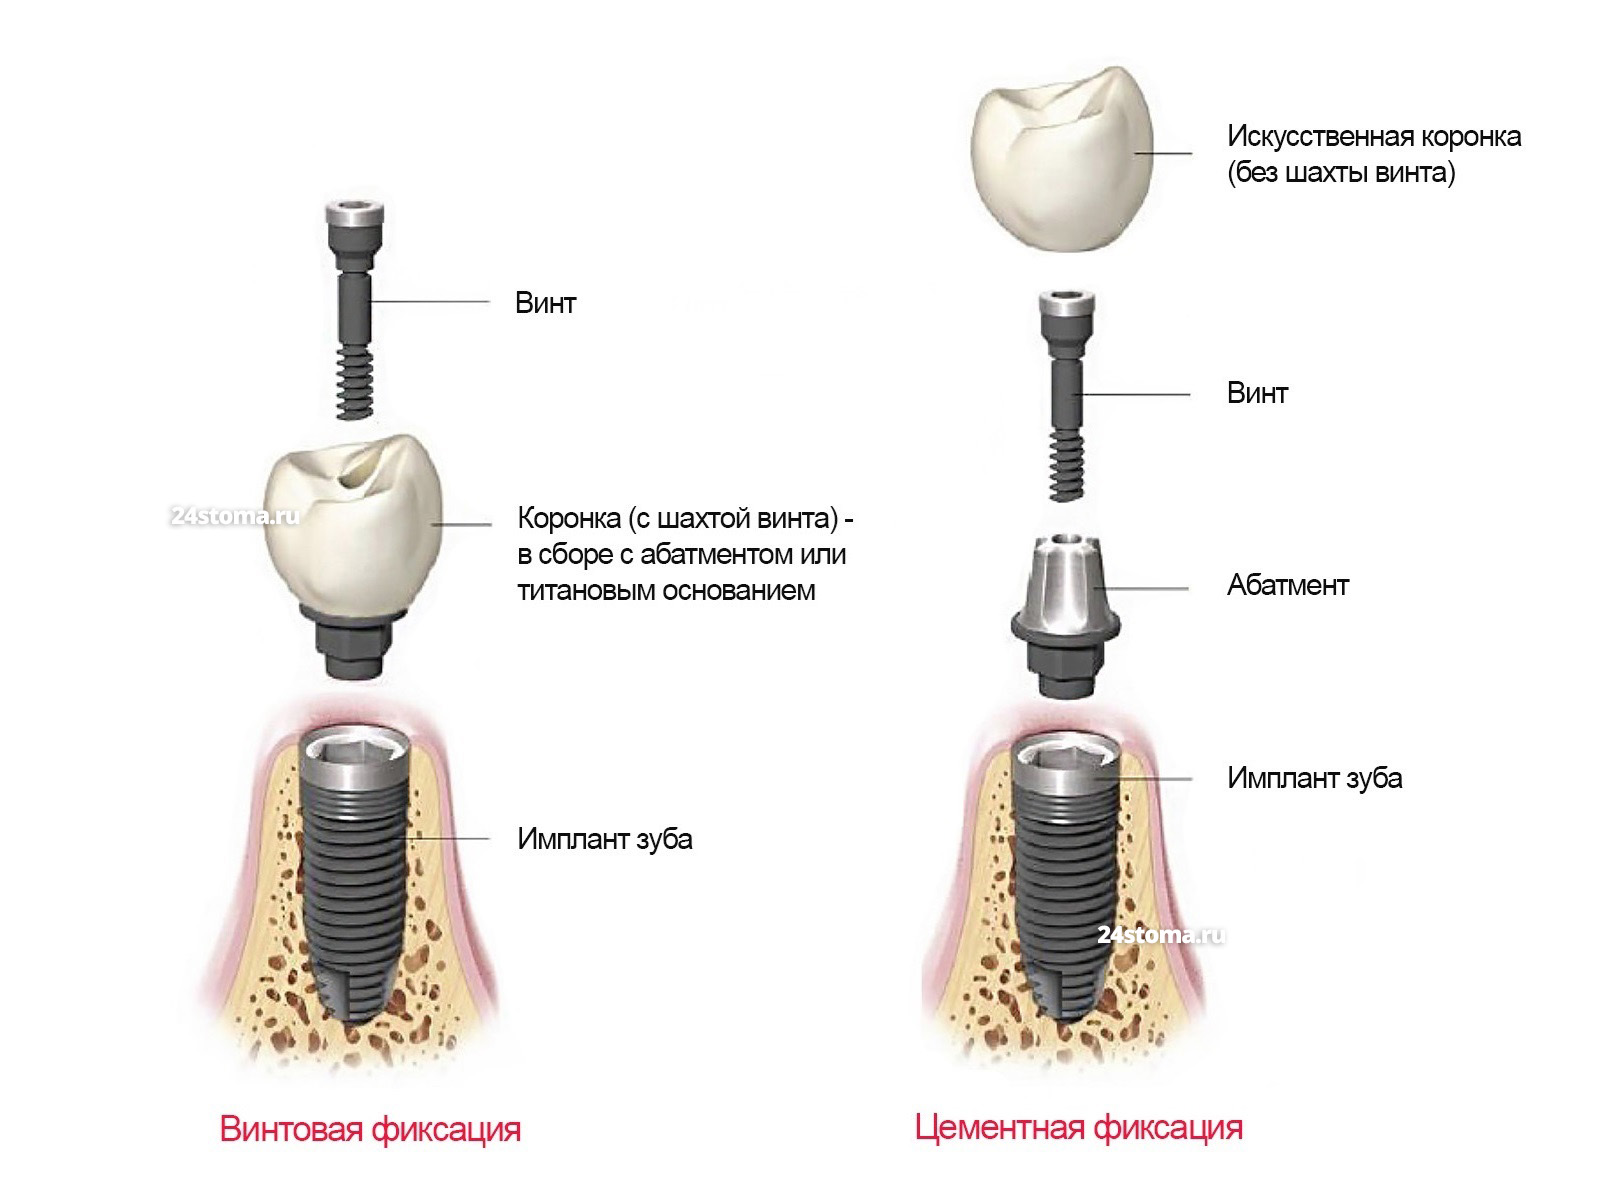 Винтовая фиксация/ цементная фиксация коронки к импланту зуба.